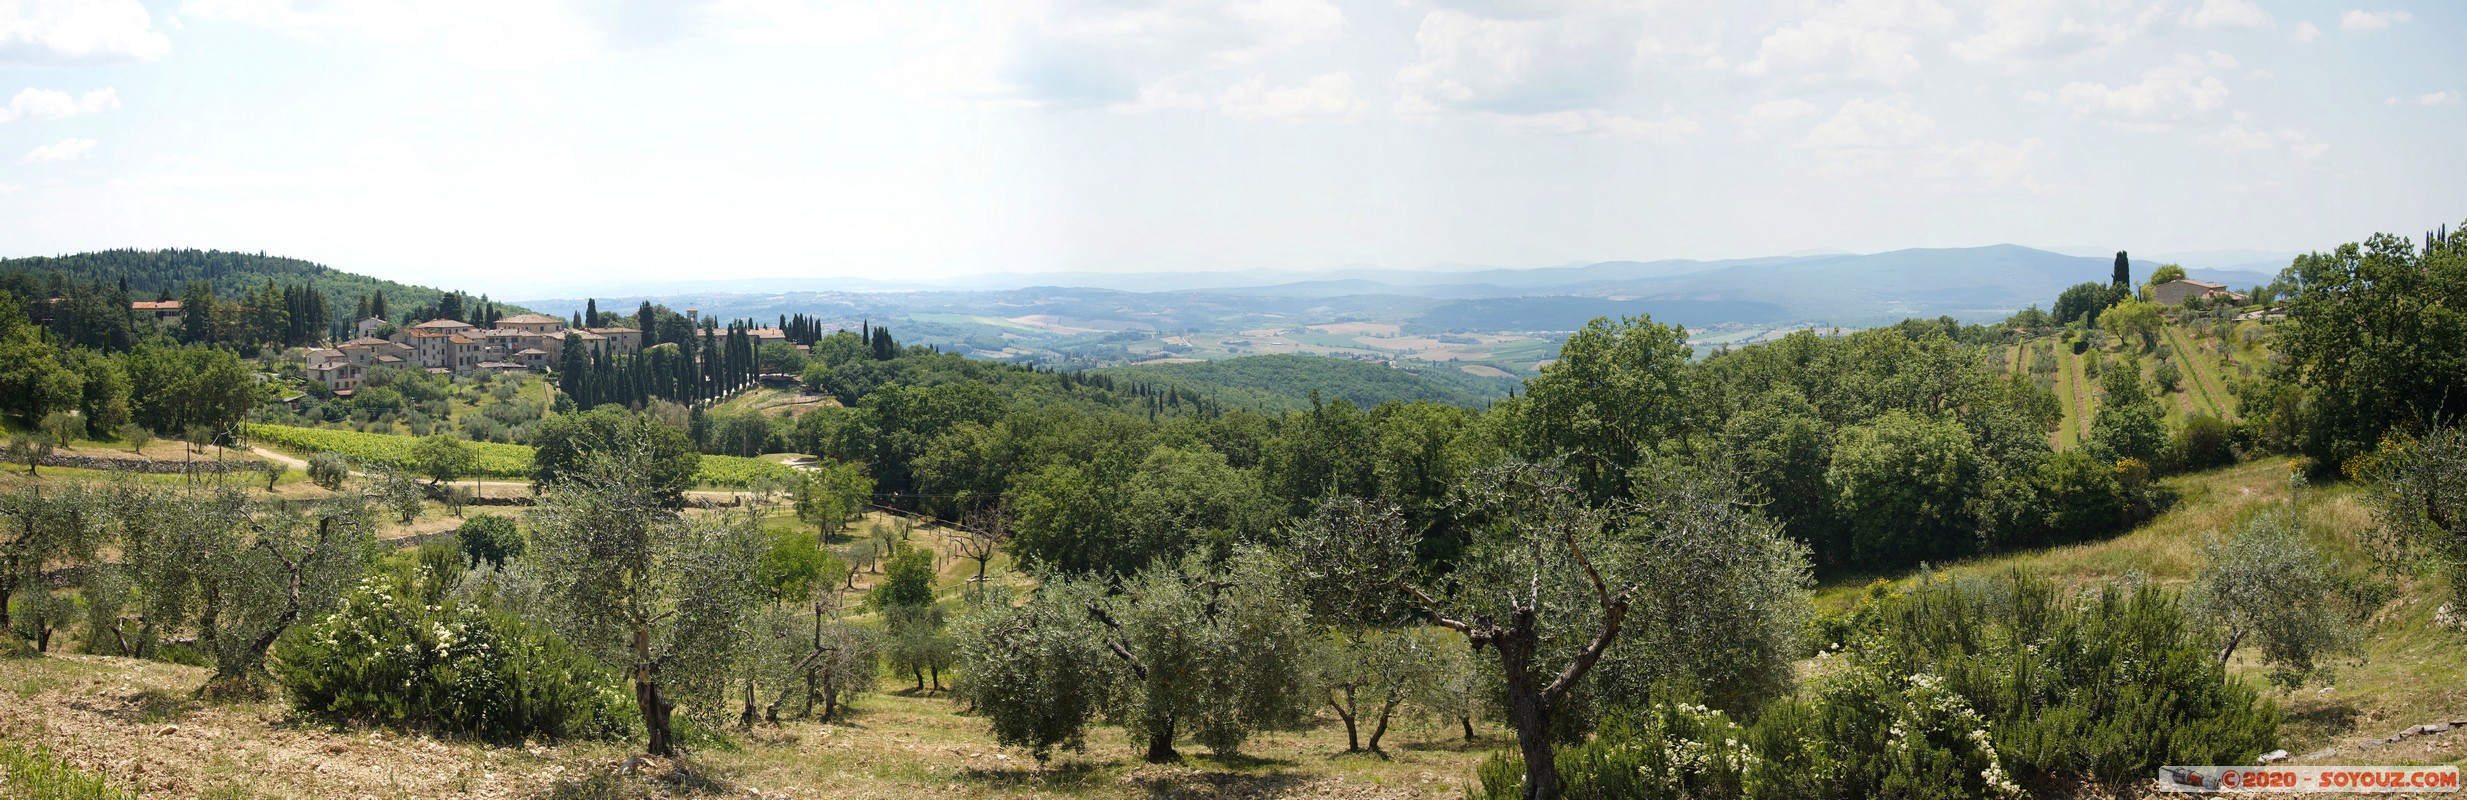 Campagna toscana - panorama
Mots-clés: Toscana plante Arbres paysage panorama ITA Italie